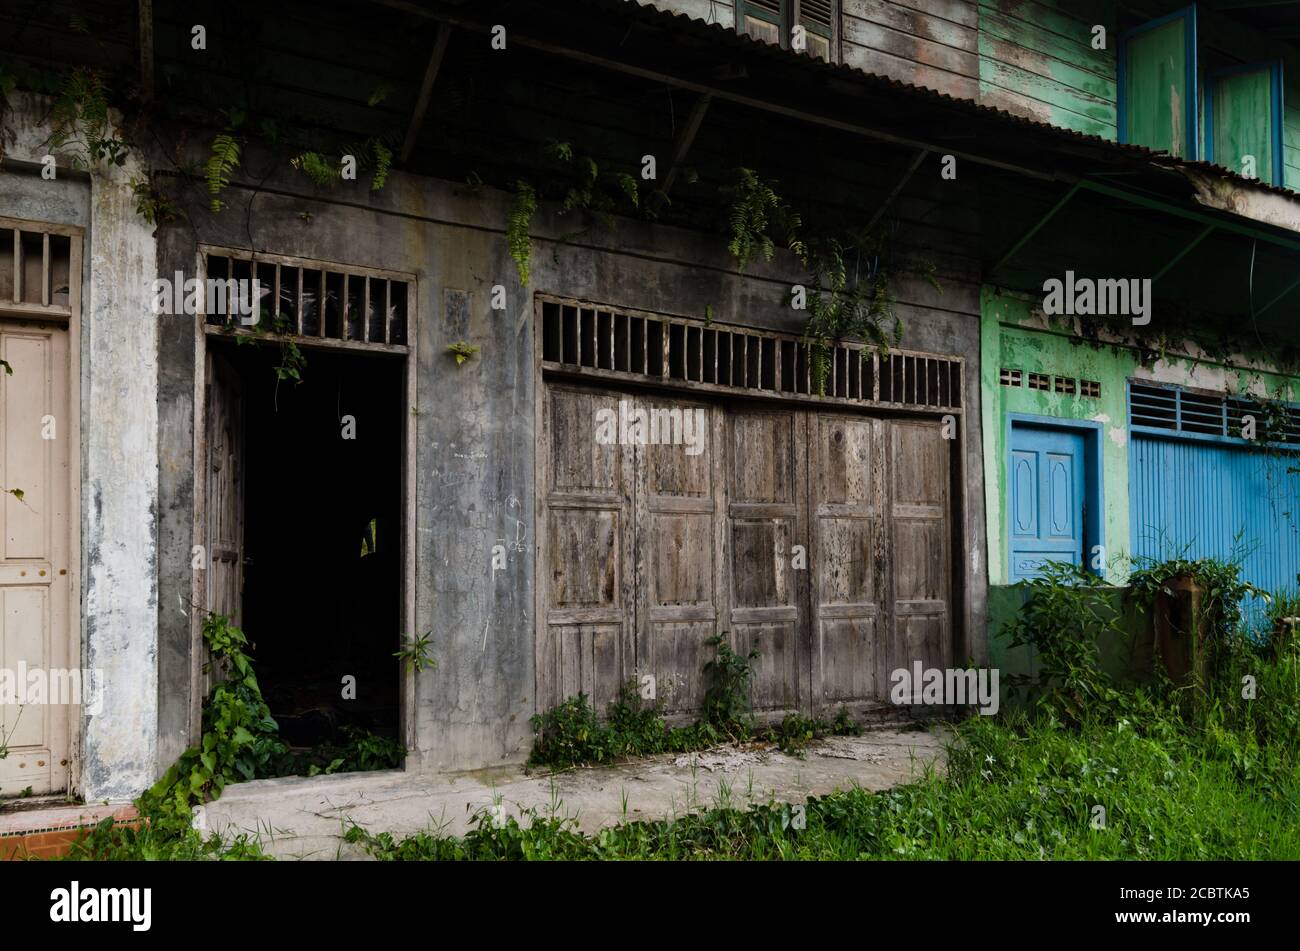 Avventura alla città fantasma abbandonata di Mount. Sinabung. Il villaggio è stato distrutto dal disastro naturale dell'eruzione vulcanica. Foto Stock